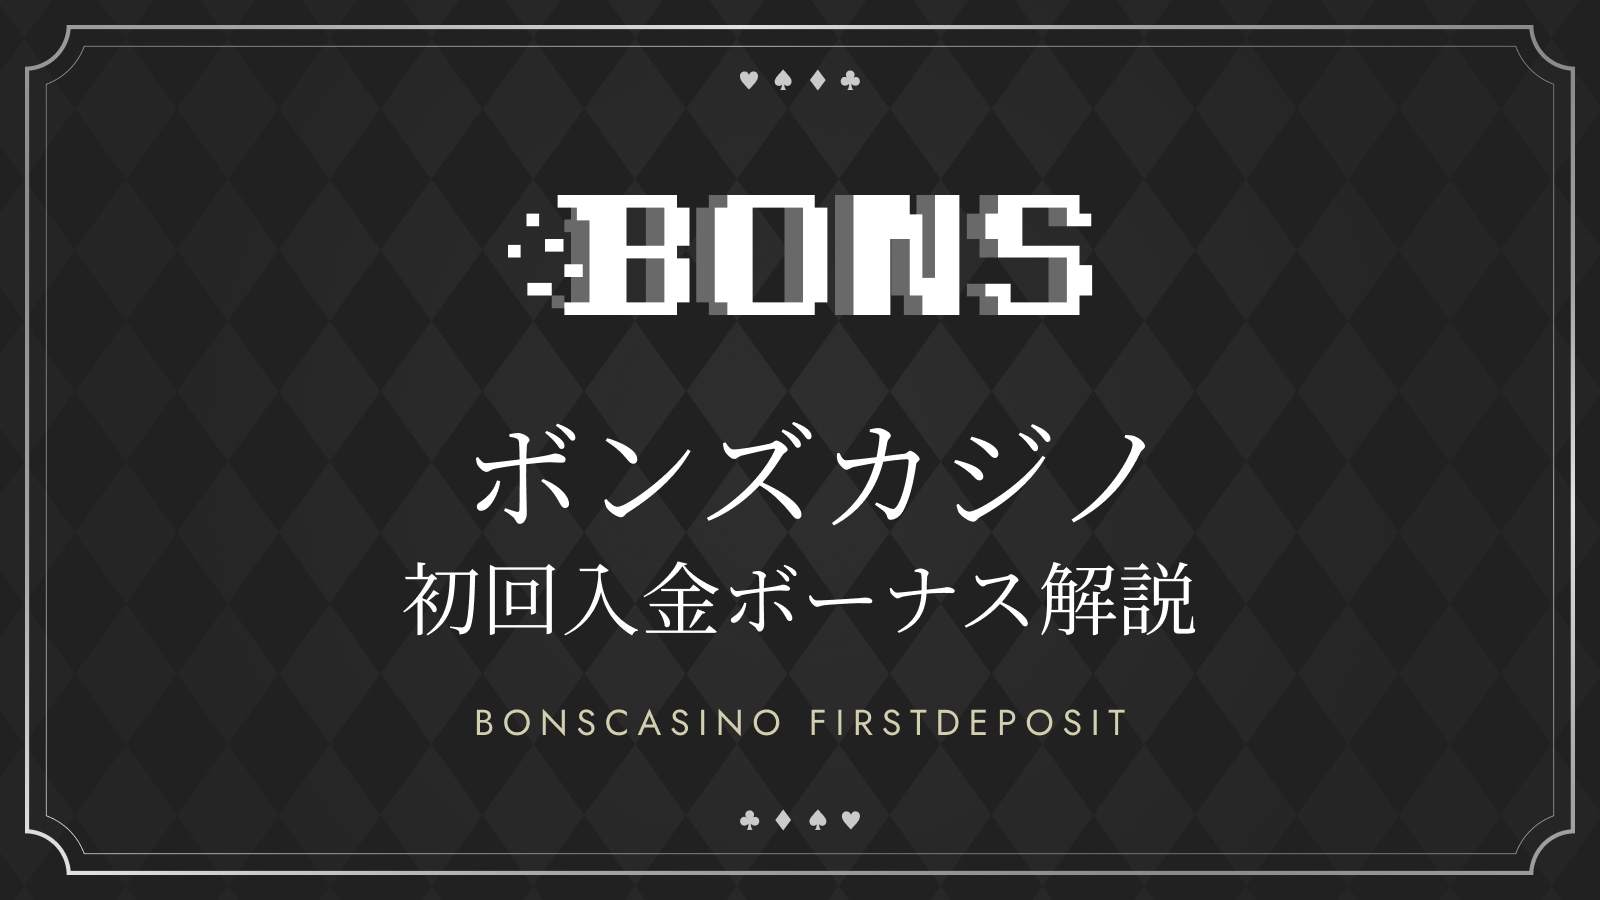 ボンズカジノの初回入金ボーナス解説 BONSCASINO FIRSTDEPOSIT